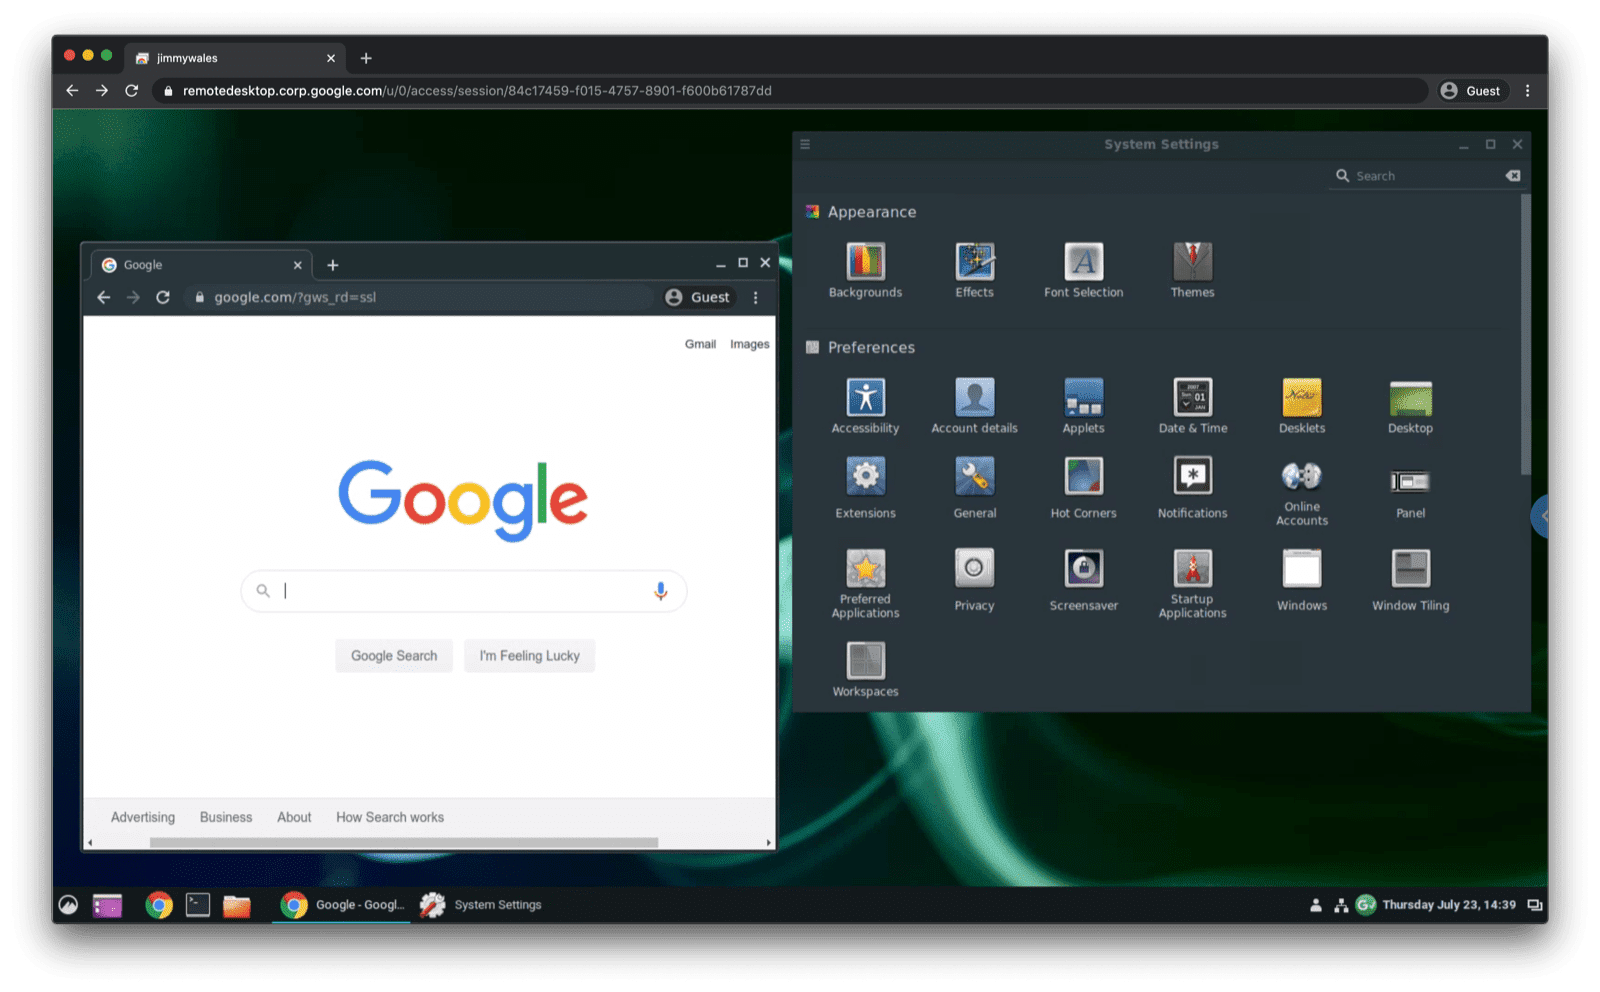 Ubuntu Linux 串流至 macOS Chrome 的瀏覽器分頁 (尚未以全螢幕模式執行)。